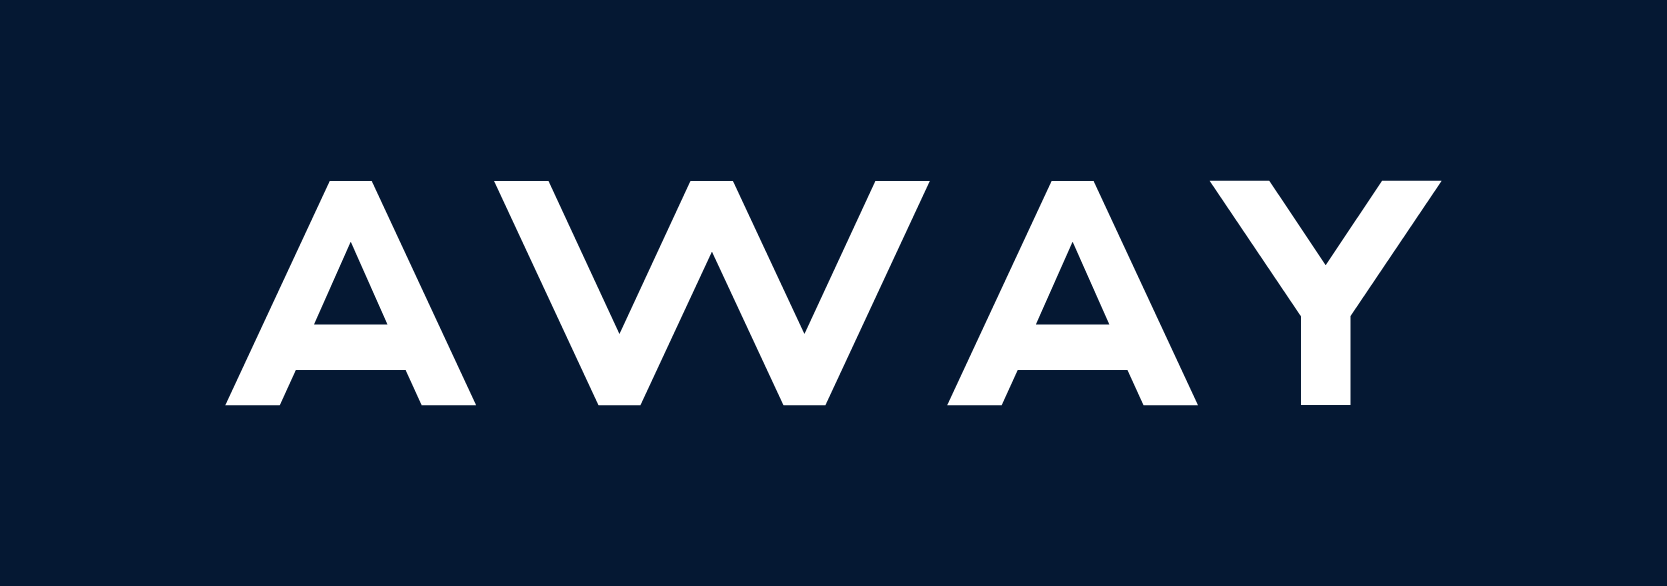 away-logo-navy